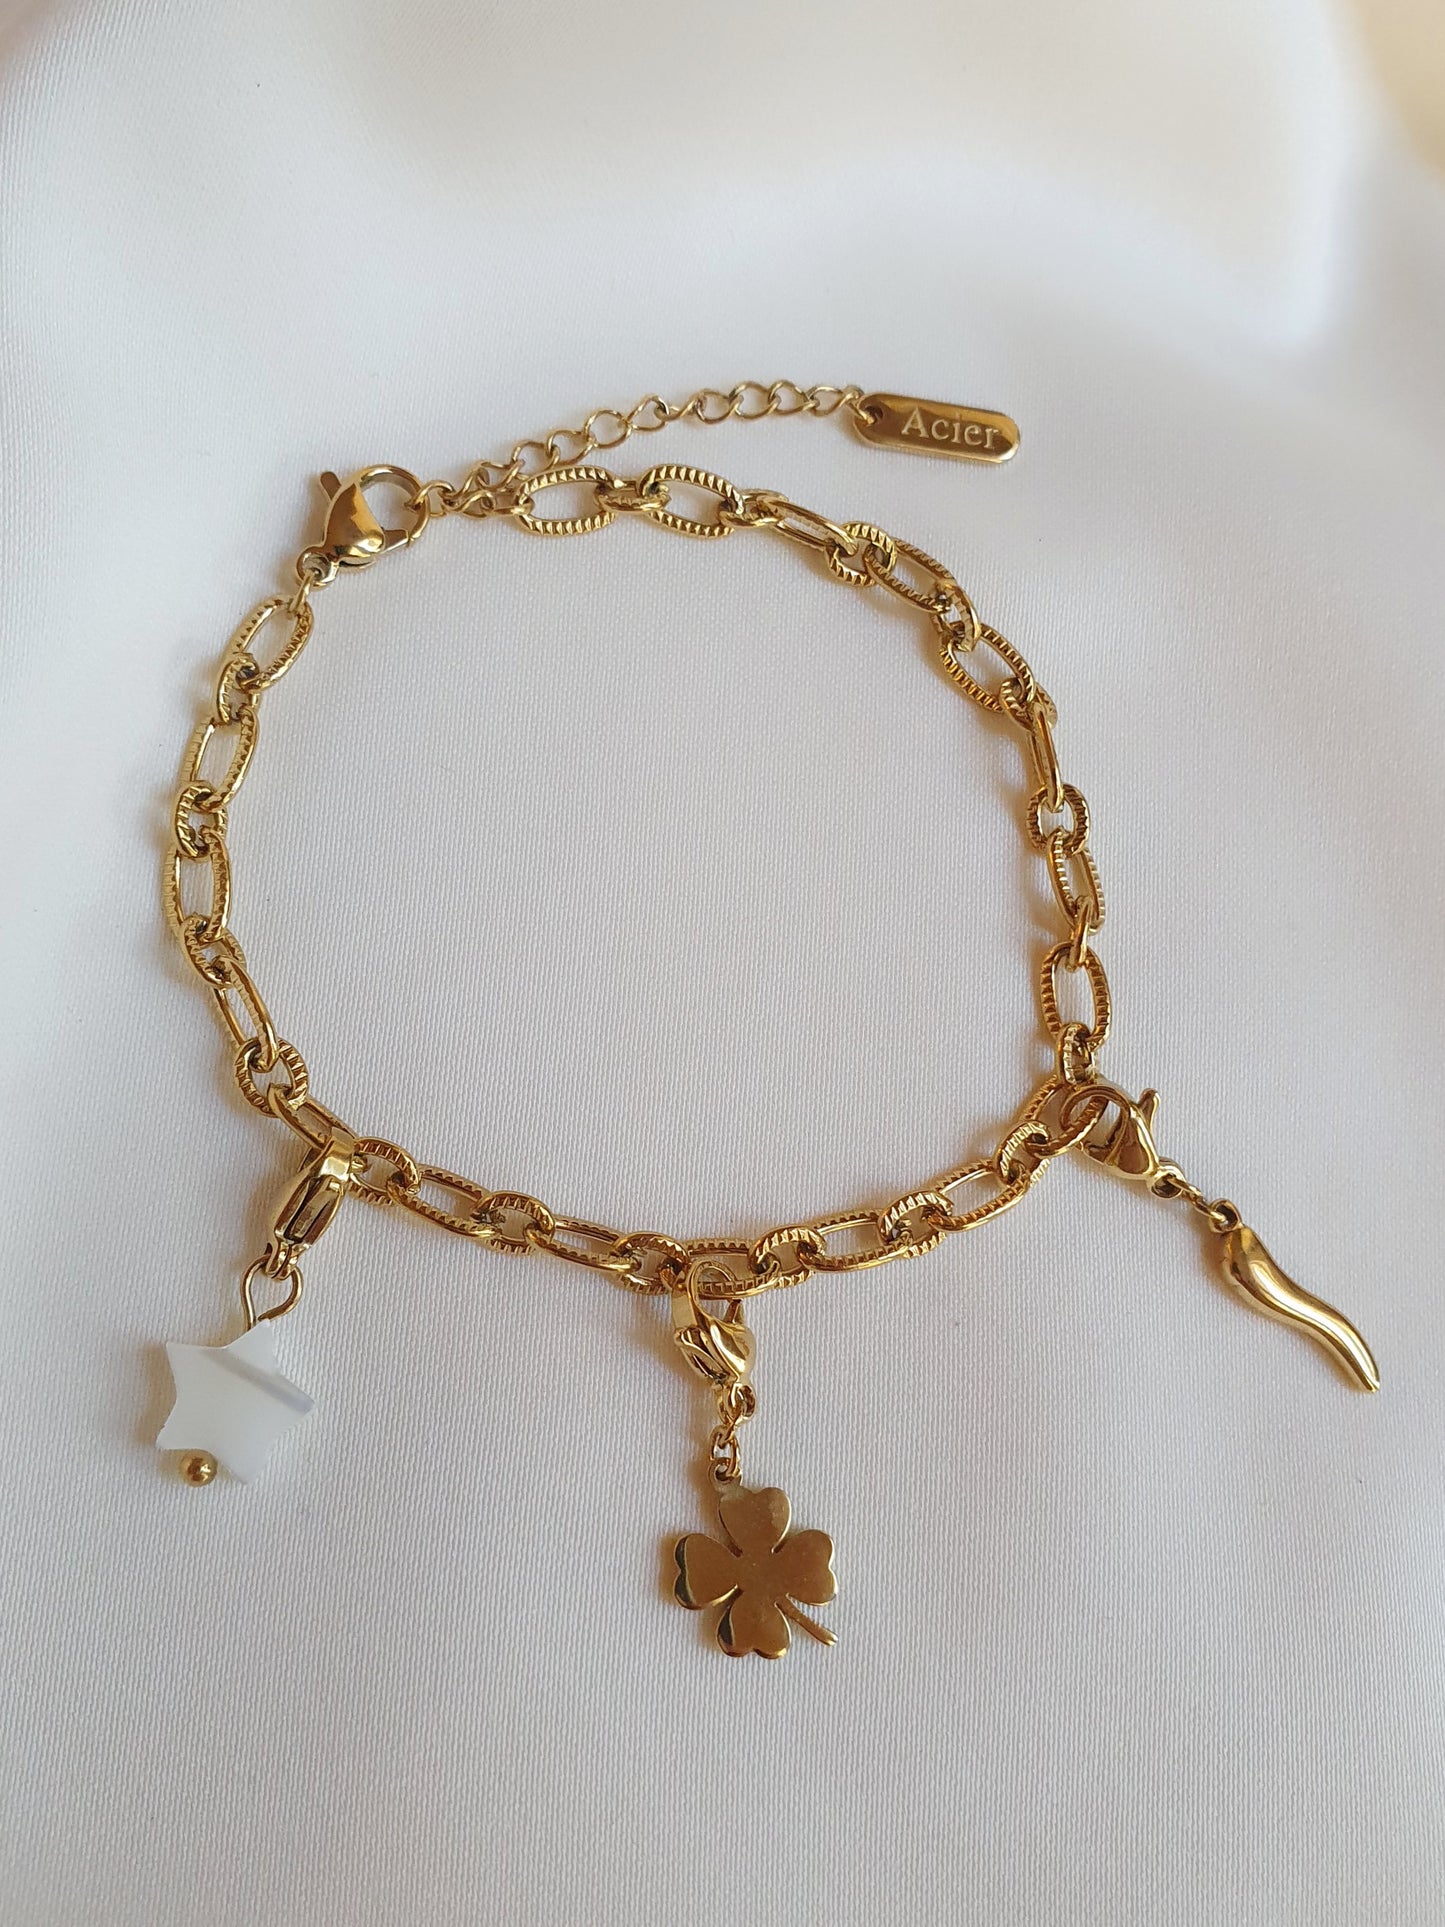 Bracelet petits maillons striés (personnalisable) - doré